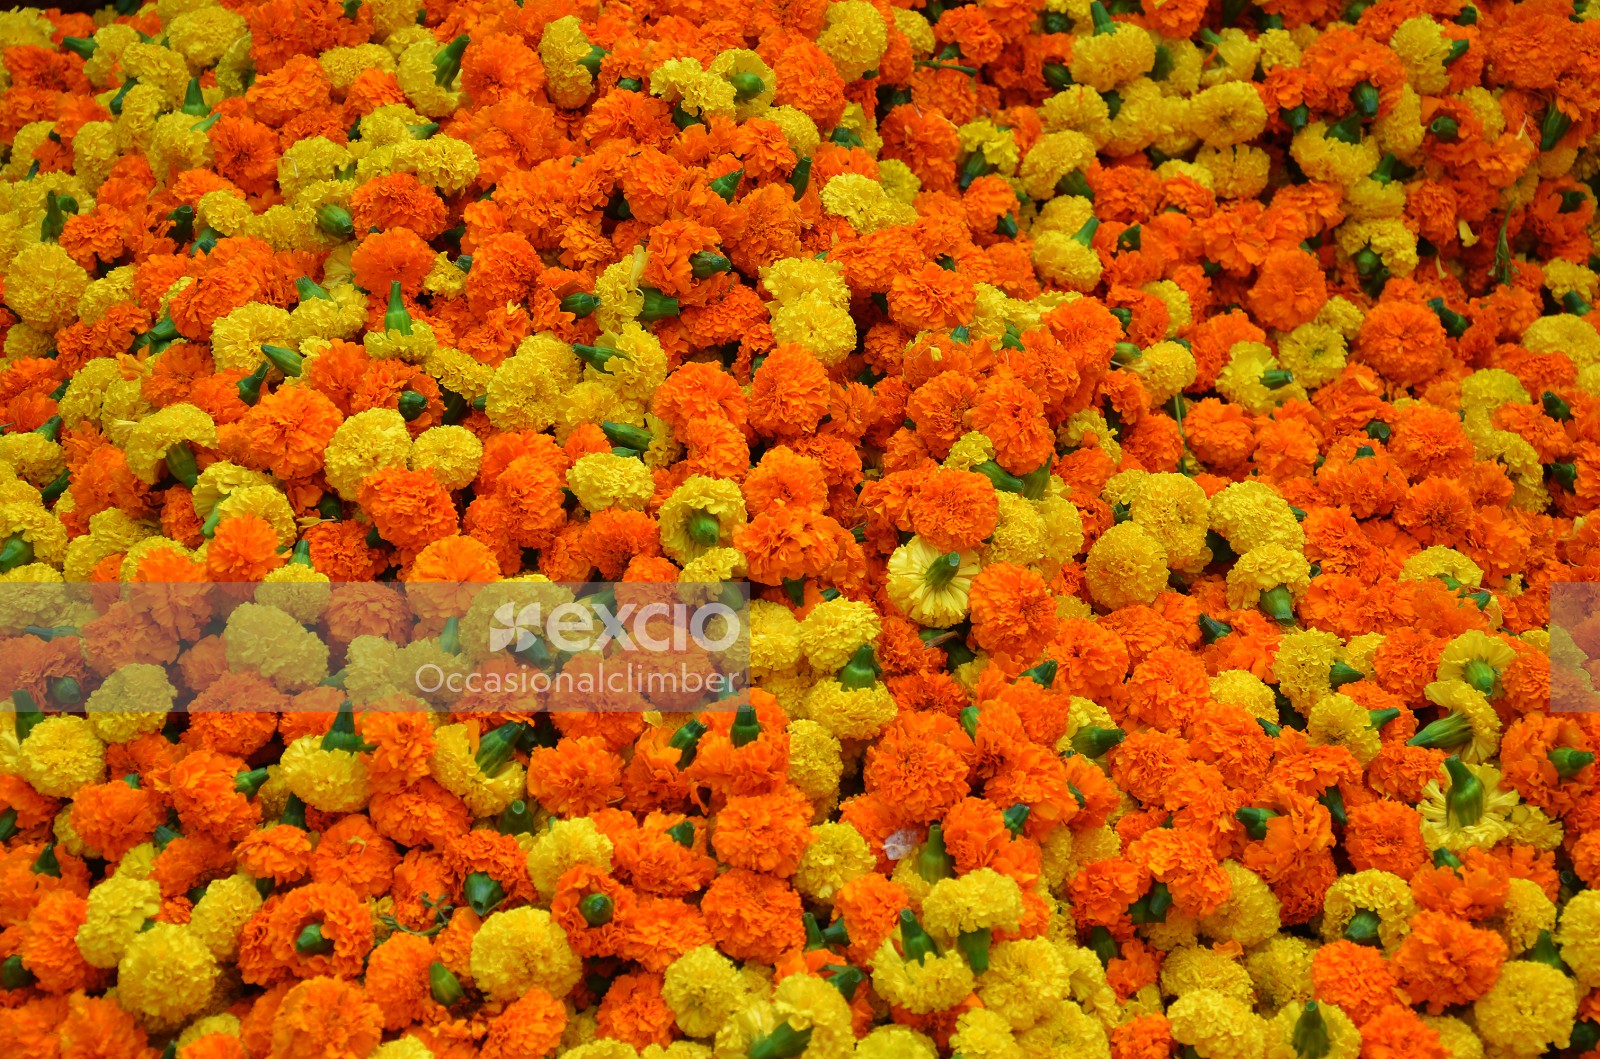 Mallick Ghat flower market, Kolkata